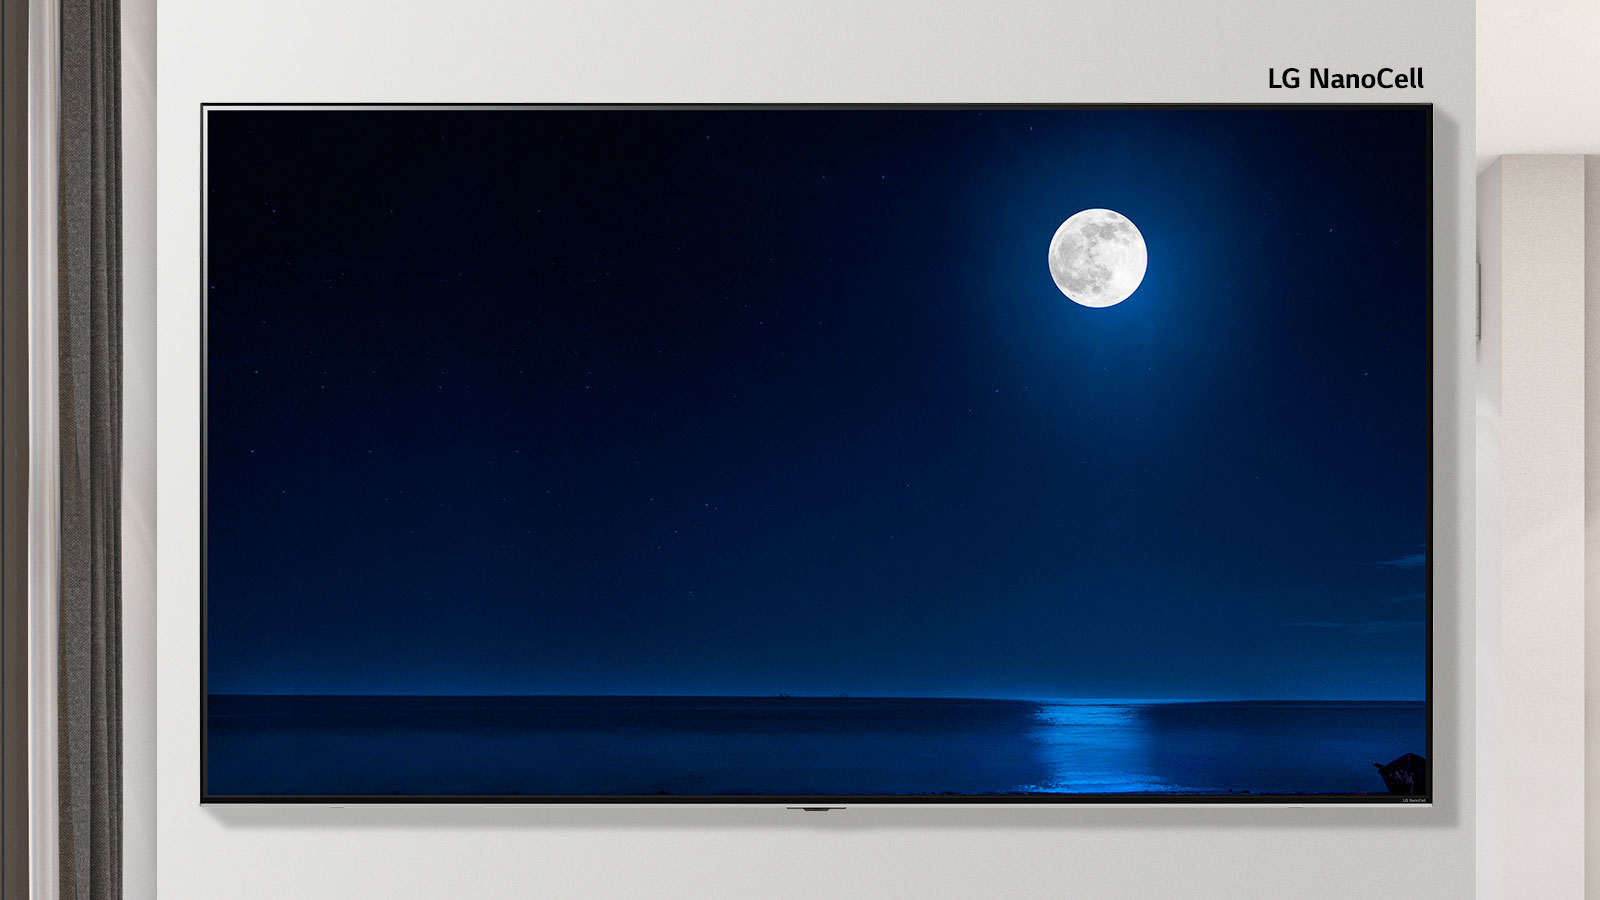 Прокручиваемое изображение установленного на стене телевизора, демонстрирующее темную сцену полной луны, отражающейся в воде. На экране чередуются изображения телевизора обычного размера и телевизора LG NanoCell с большим экраном.